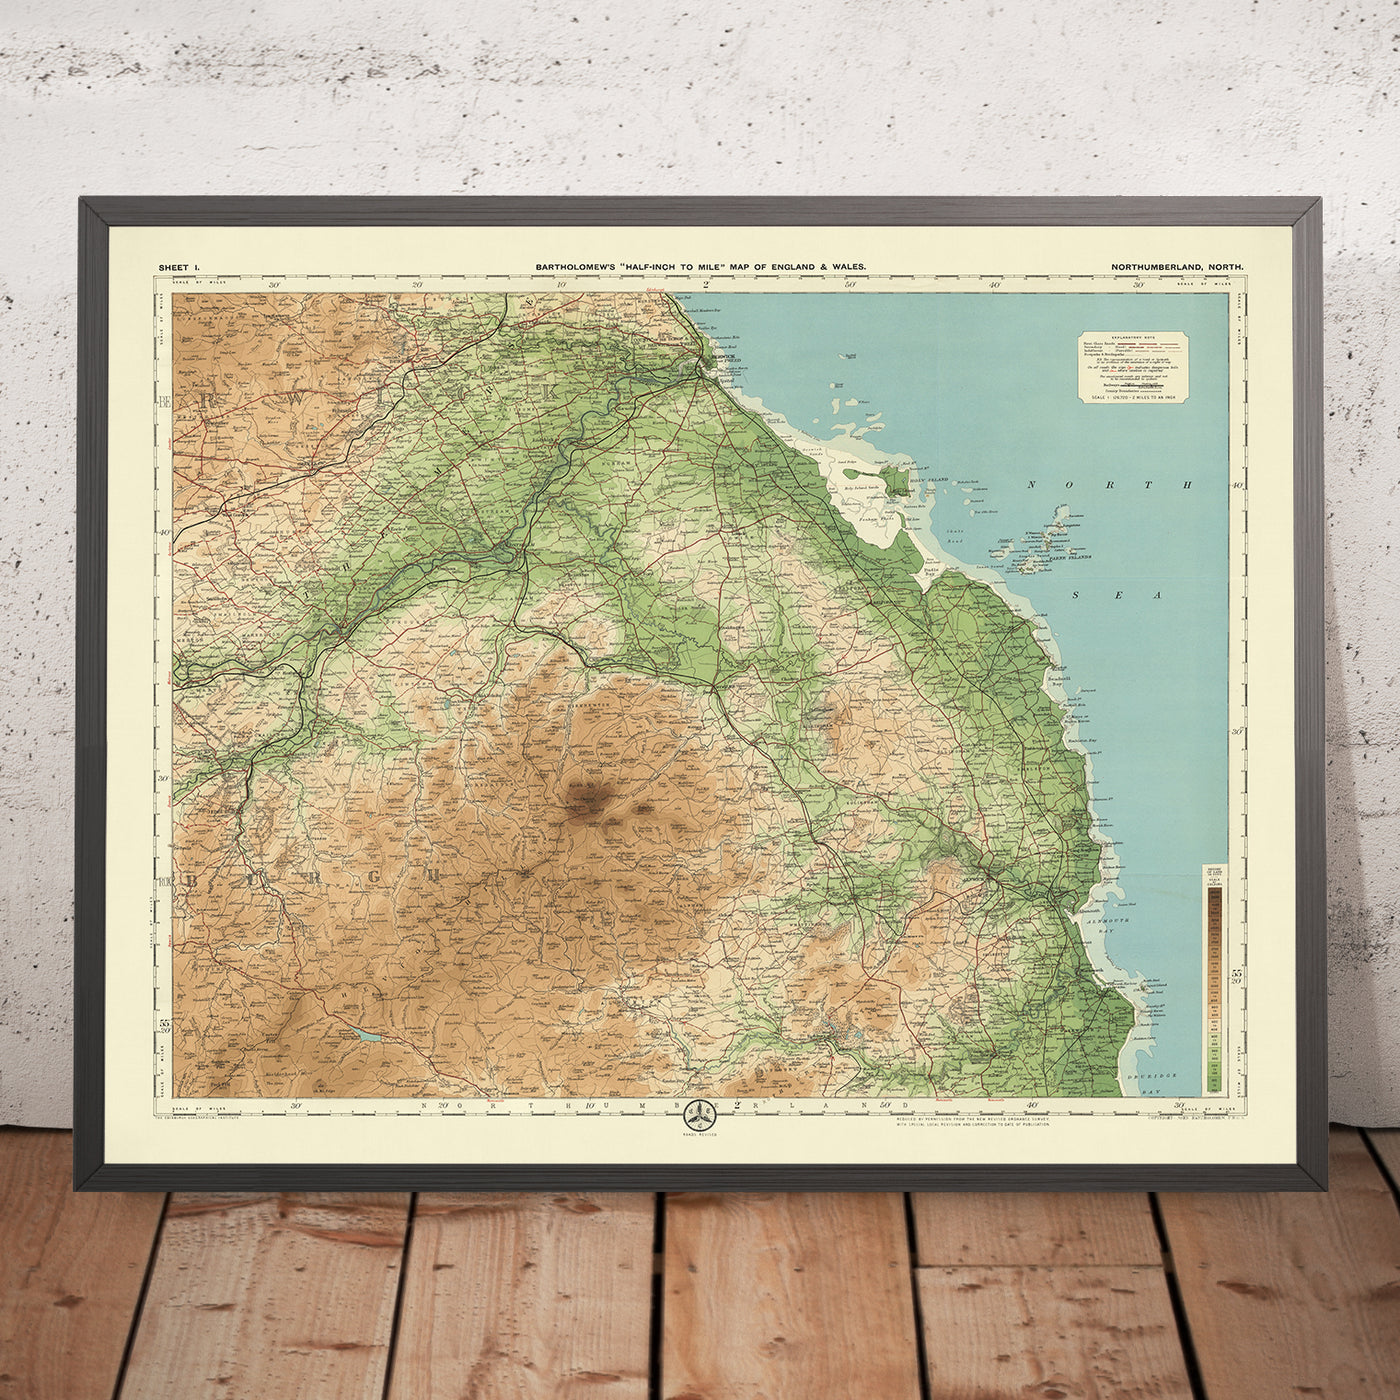 Alte OS-Karte von Northumberland – Norden von Bartholomew, 1901: Alnwick, Berwick, Cheviot Hills, Tweed, Hadrianswall, Lindisfarne